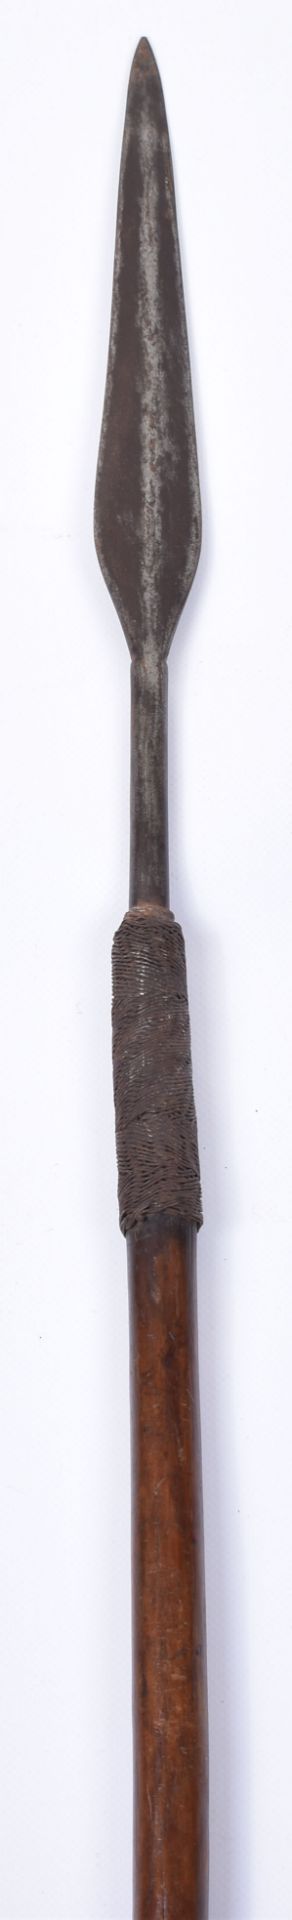 Interesting Early Zulu Spear “Assegai” - Image 5 of 10